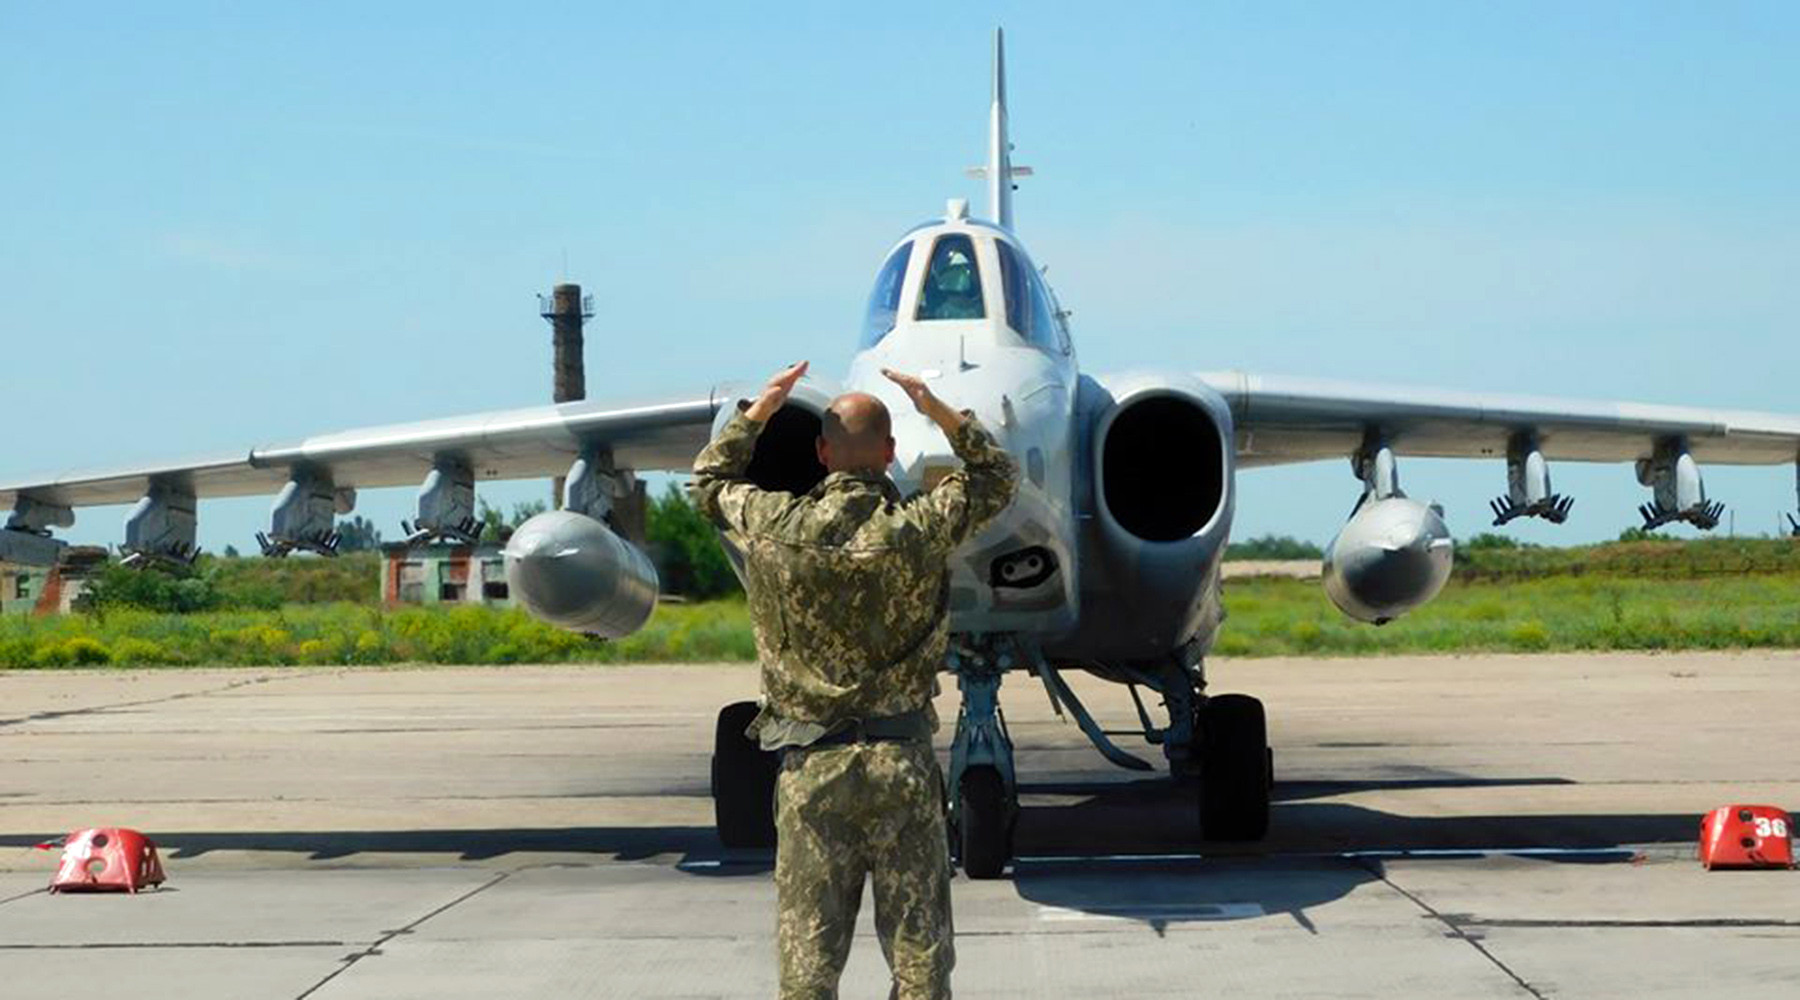 Небезвозмездная помощь: сможет ли Украина обновить ВВС за счёт американских самолётов